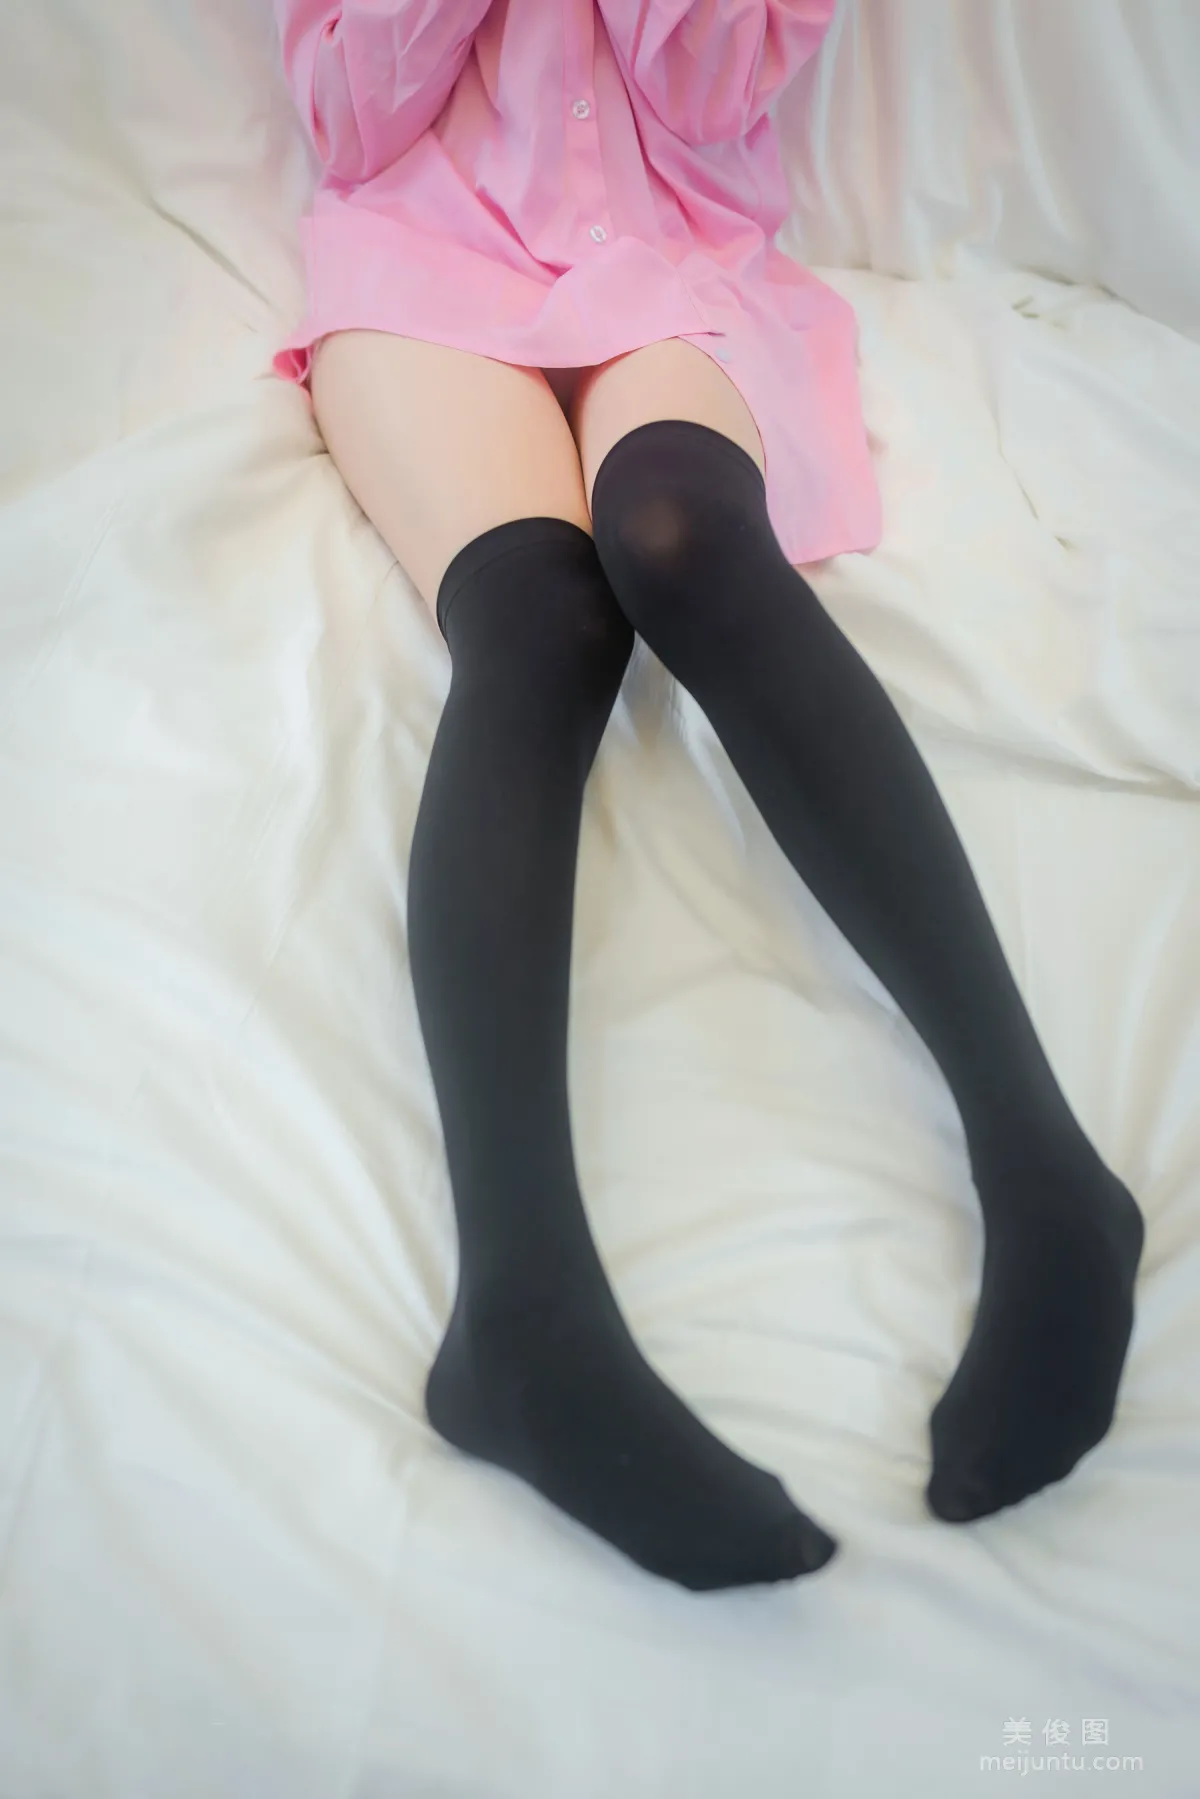 [网红COSER] Kitaro_绮太郎 - 粉色衬衫 写真集9